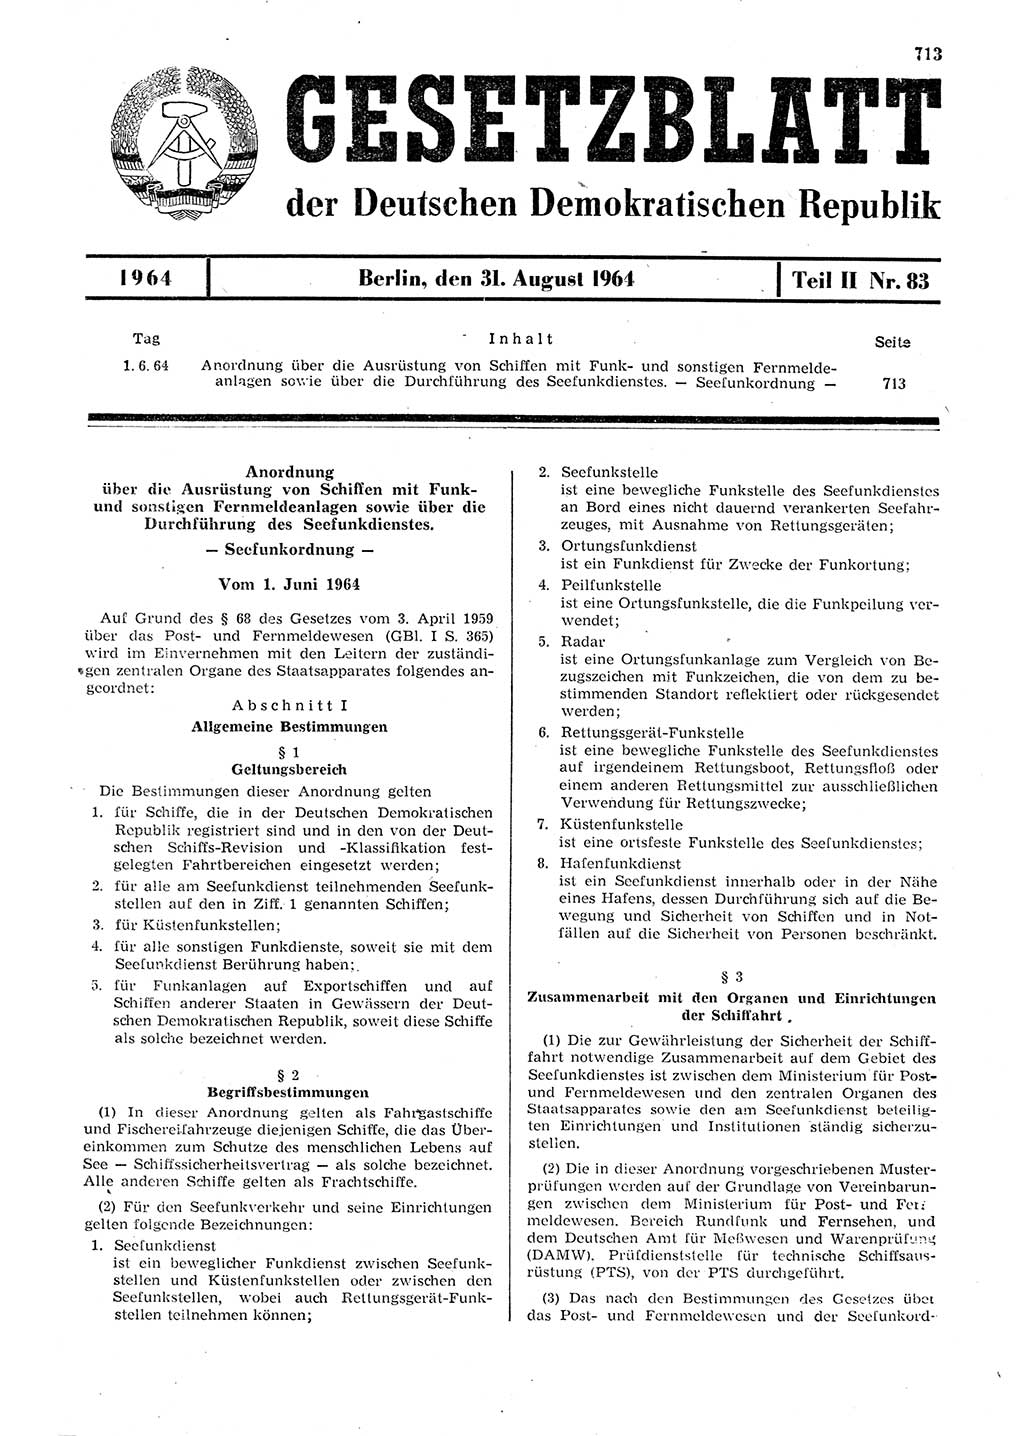 Gesetzblatt (GBl.) der Deutschen Demokratischen Republik (DDR) Teil ⅠⅠ 1964, Seite 713 (GBl. DDR ⅠⅠ 1964, S. 713)